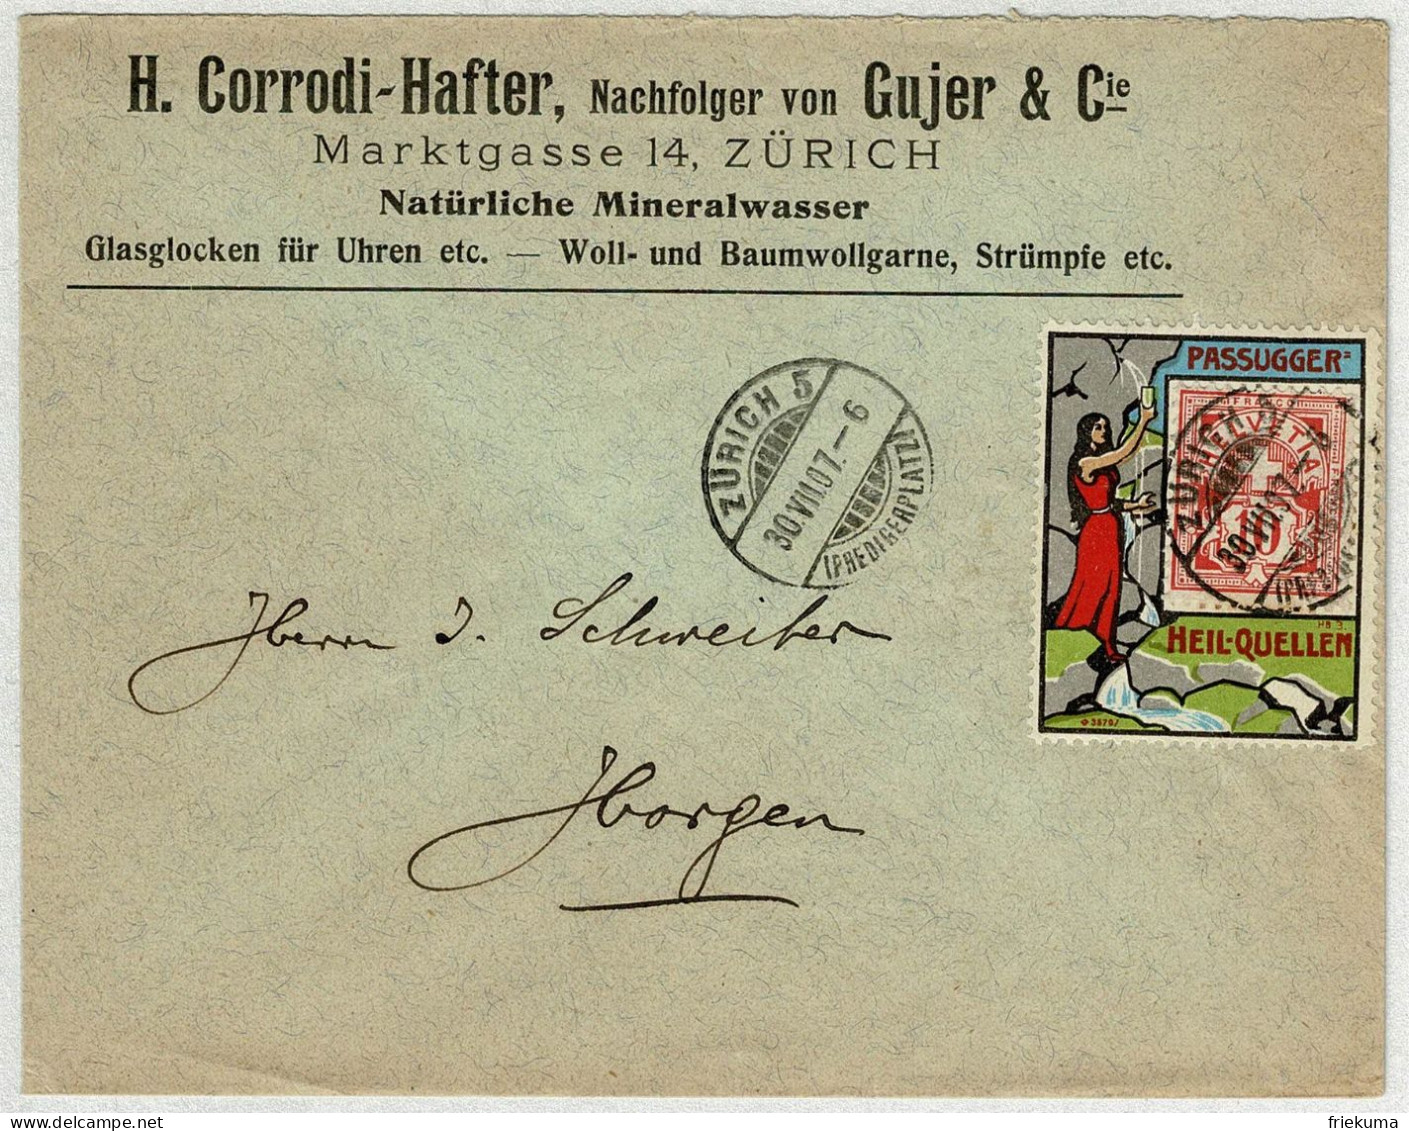 Schweiz 1907, Kreuz Und Wertziffer, Brief Zürich - Horgen, Trägervignette Passugger Heilquellen, Mineralwasser - Covers & Documents